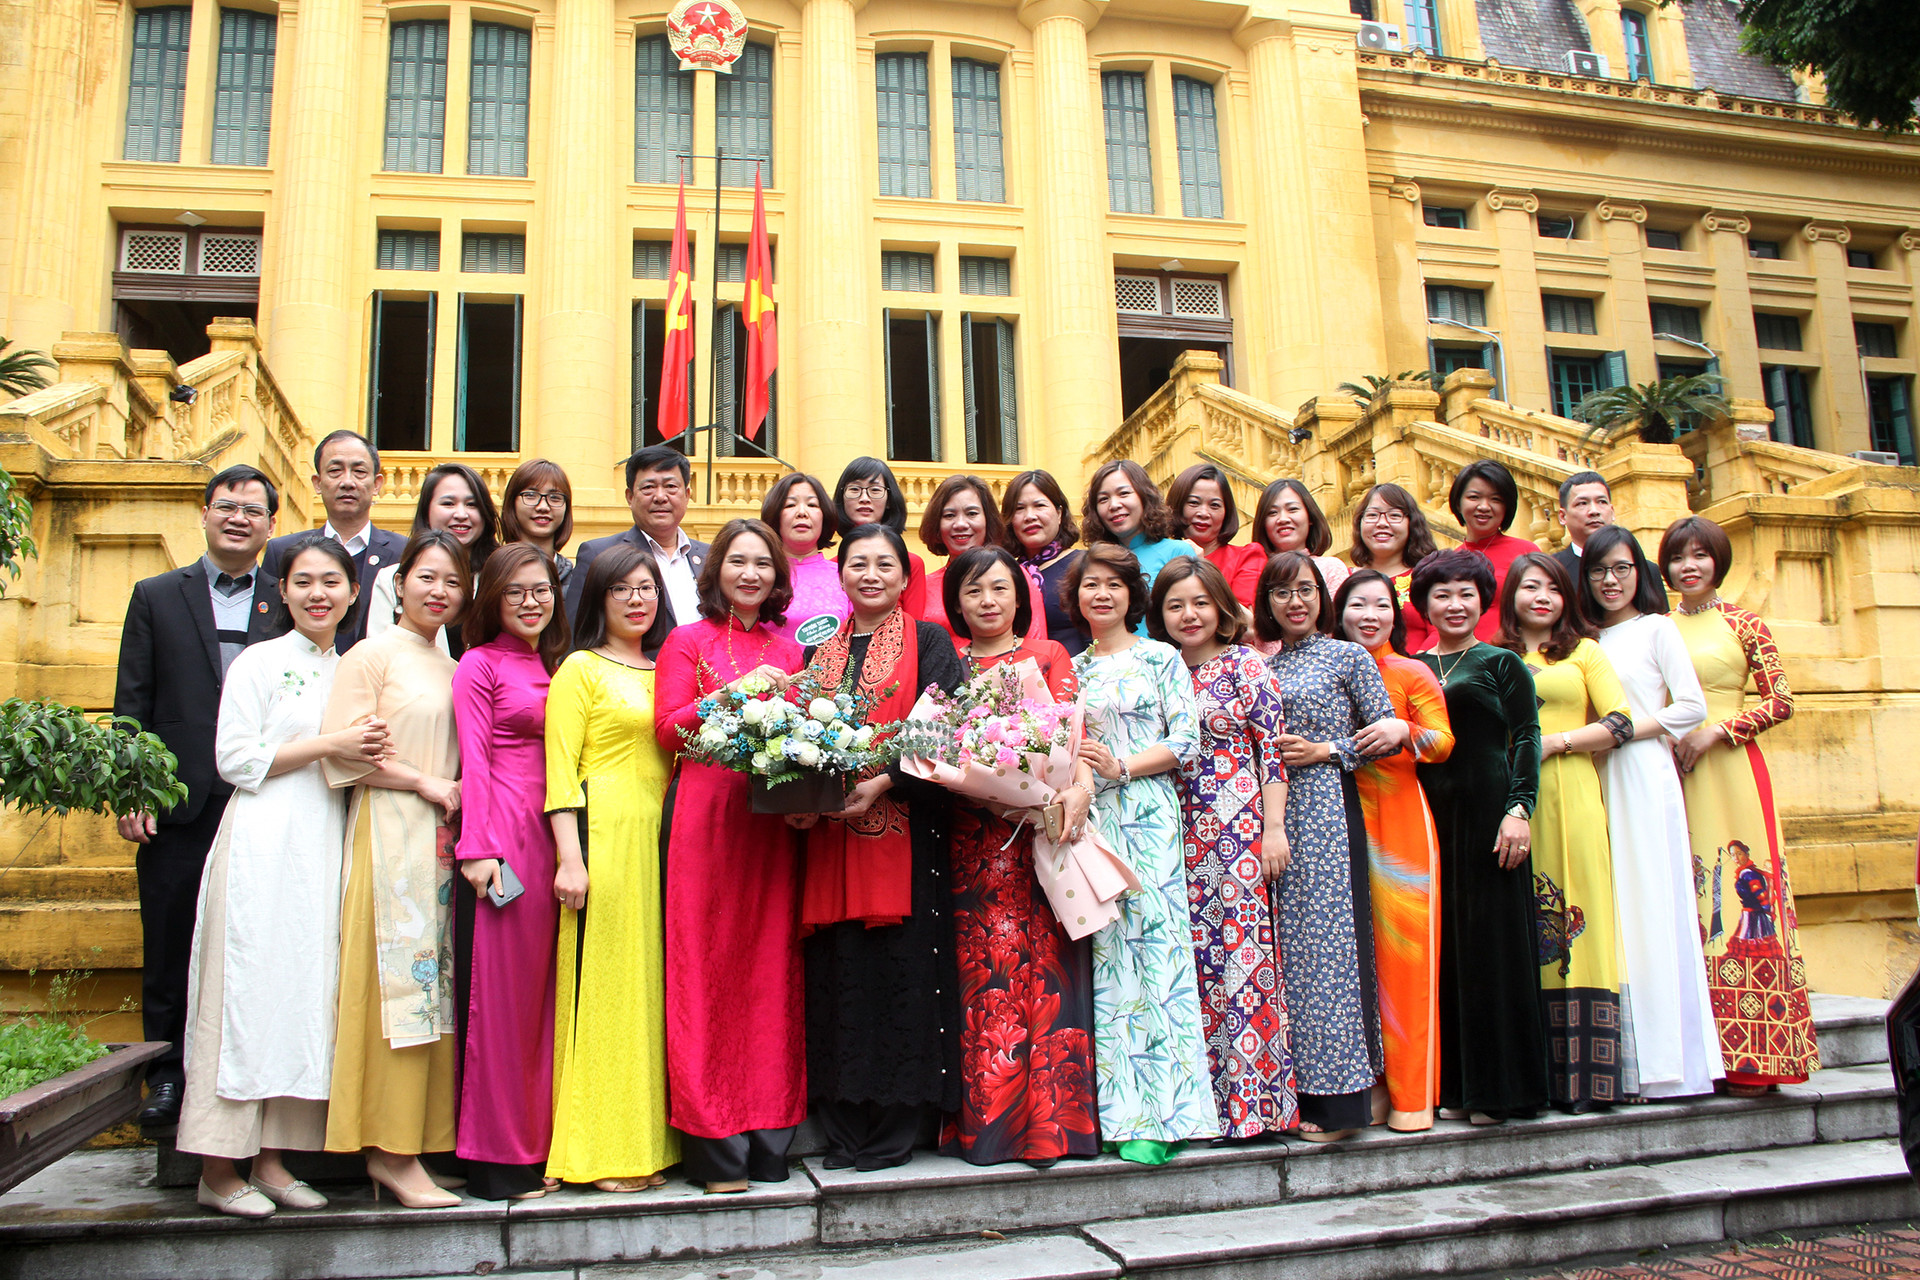 Kỷ niệm 110 năm Ngày Quốc tế phụ nữ 8/3 tại các đơn vị thuộc TANDTC